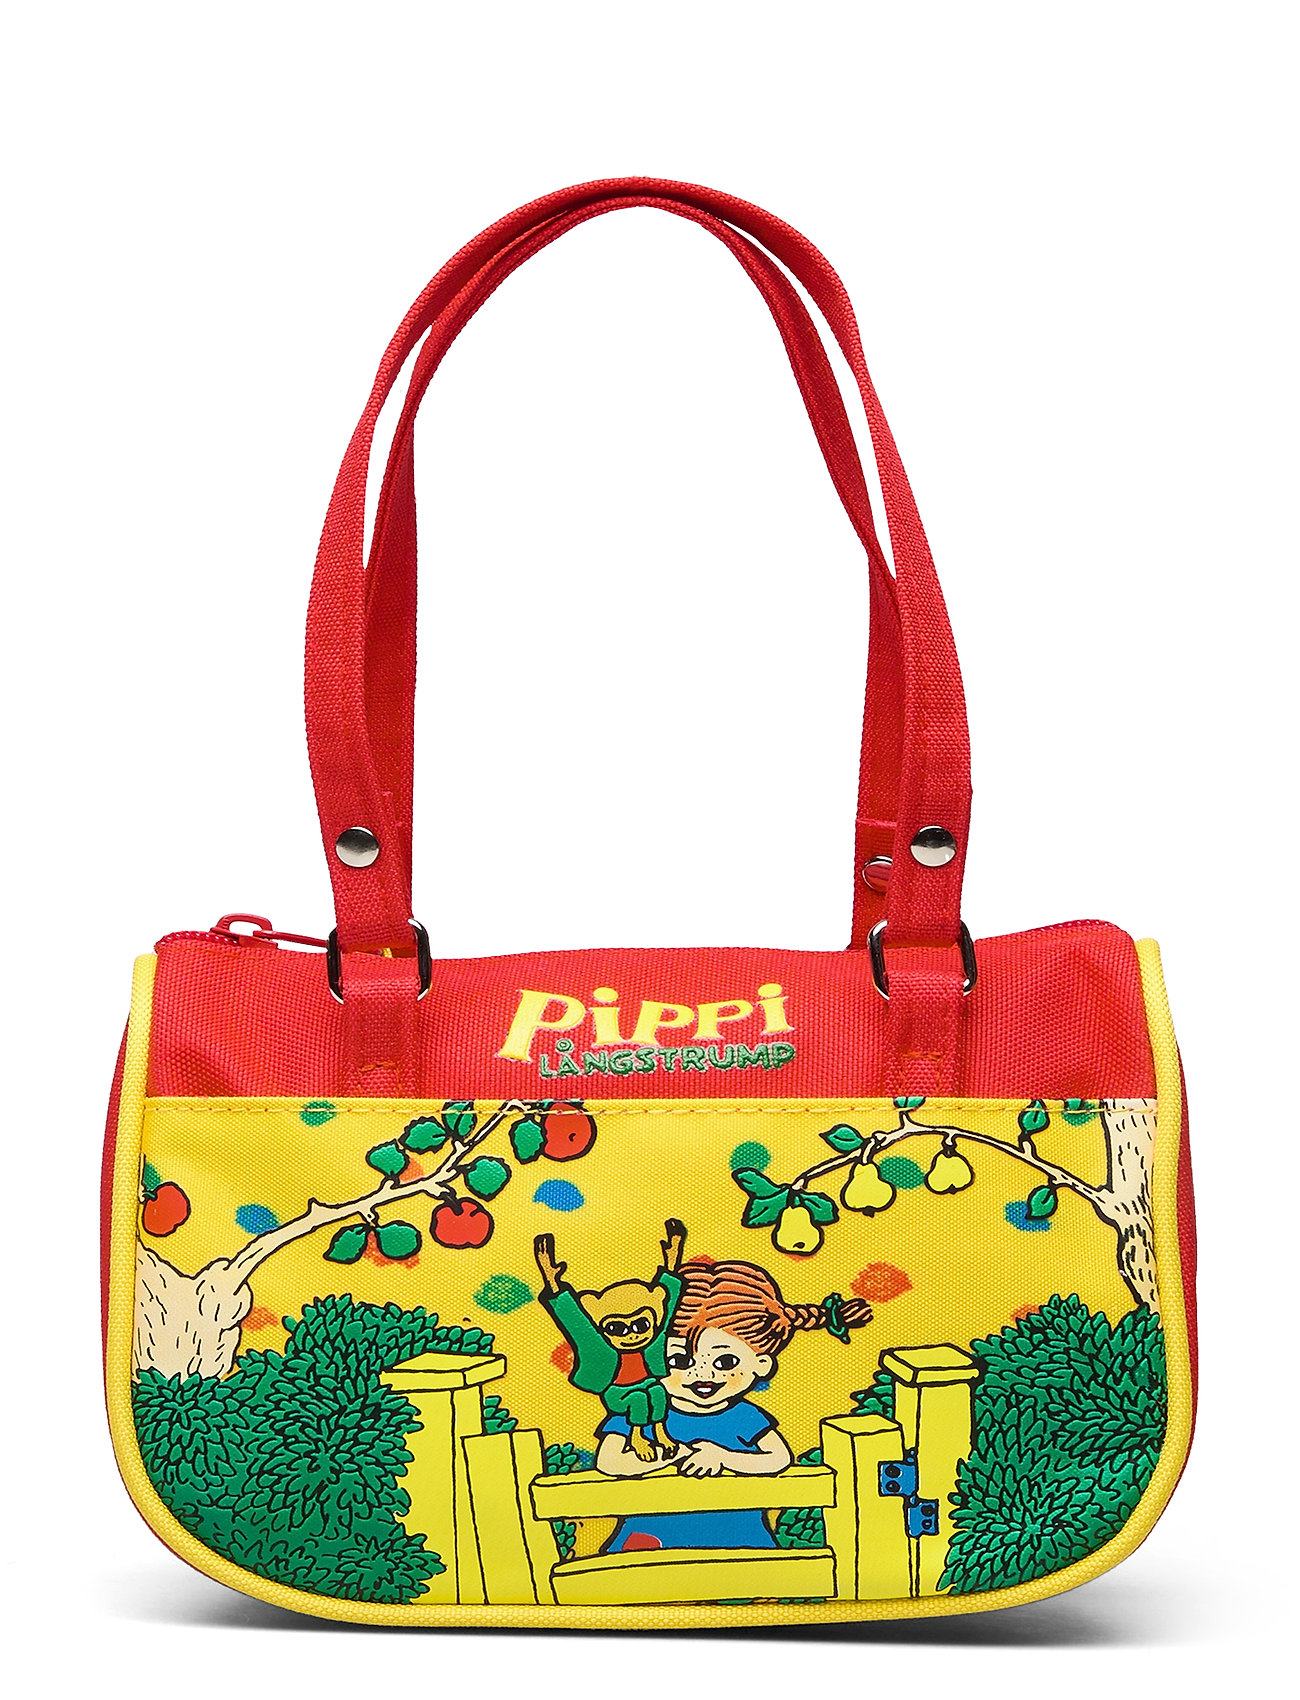 Pippi Small Handbag Tote Taske Multi/mønstret Pippi Långstrump